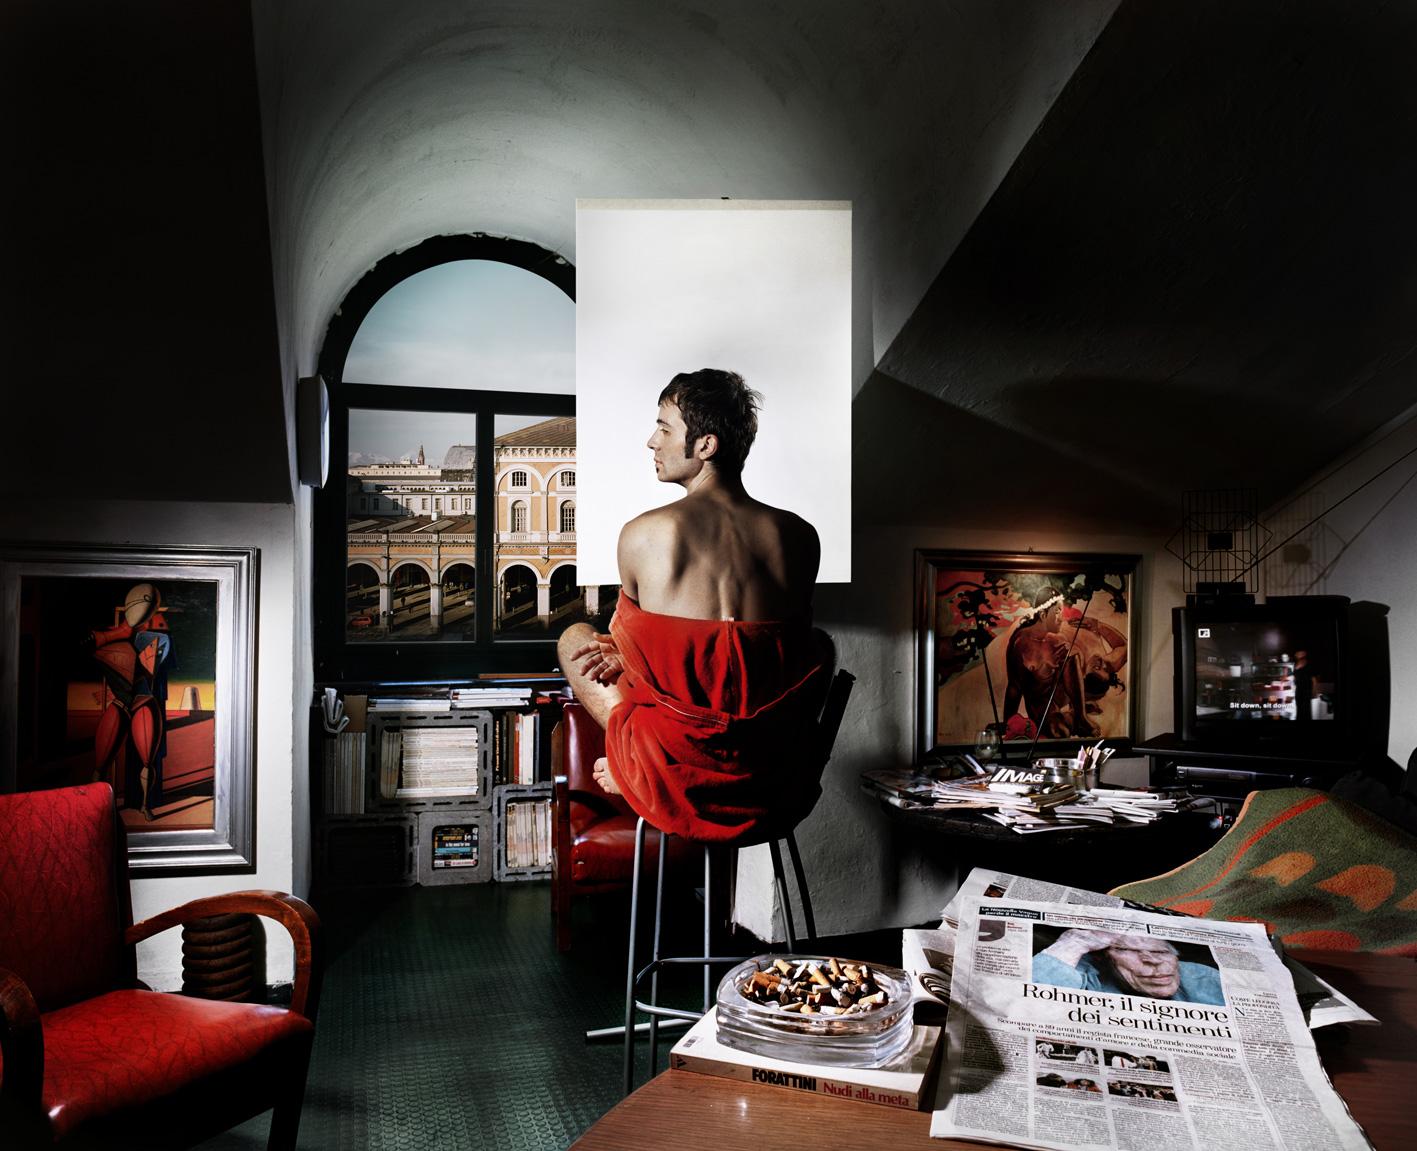 Aurore Valade Color Photograph - Man of feelings / Uomo dei sentimenti, 2010